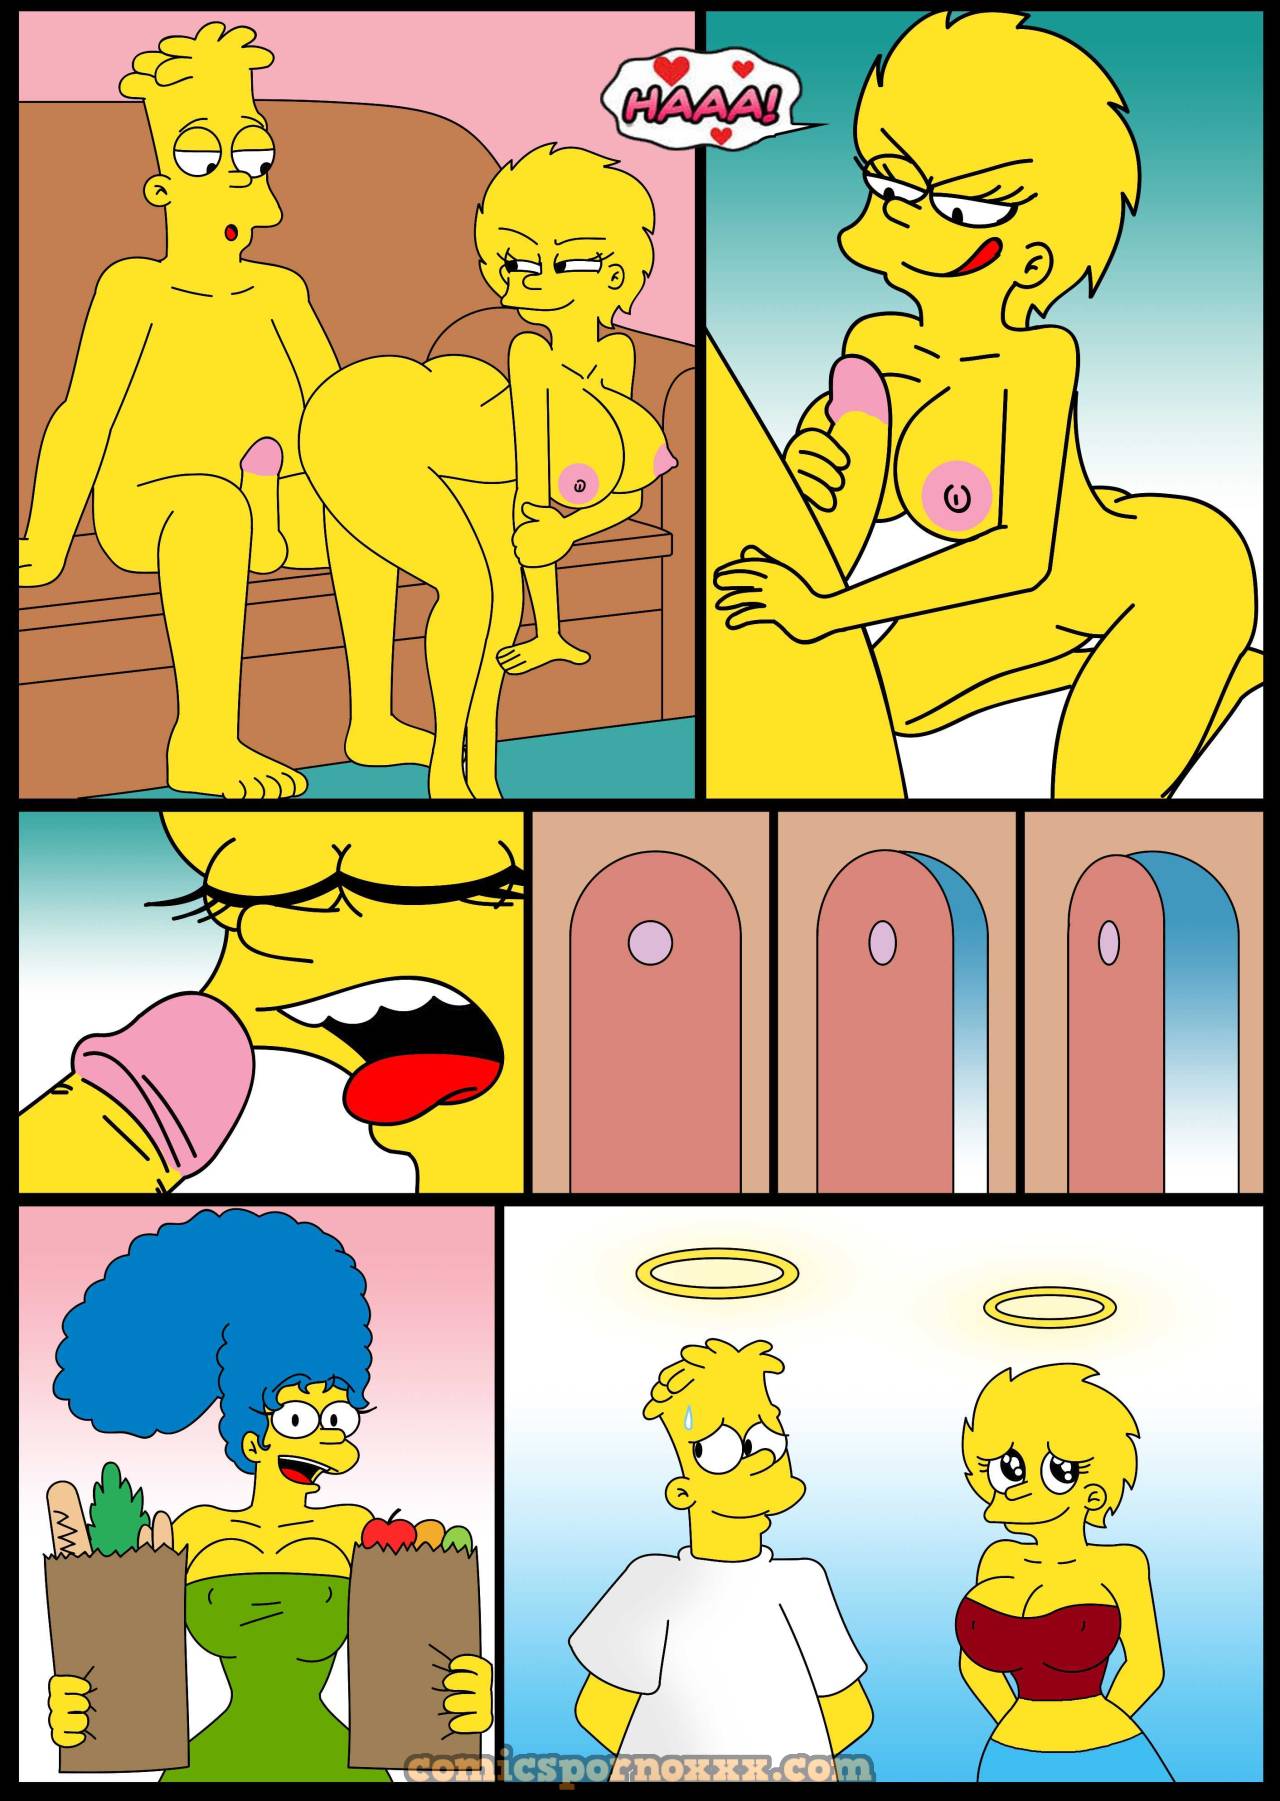 El Video Porno de Marge y Homero Simpson - 6 - Comics Porno - Hentai Manga - Cartoon XXX